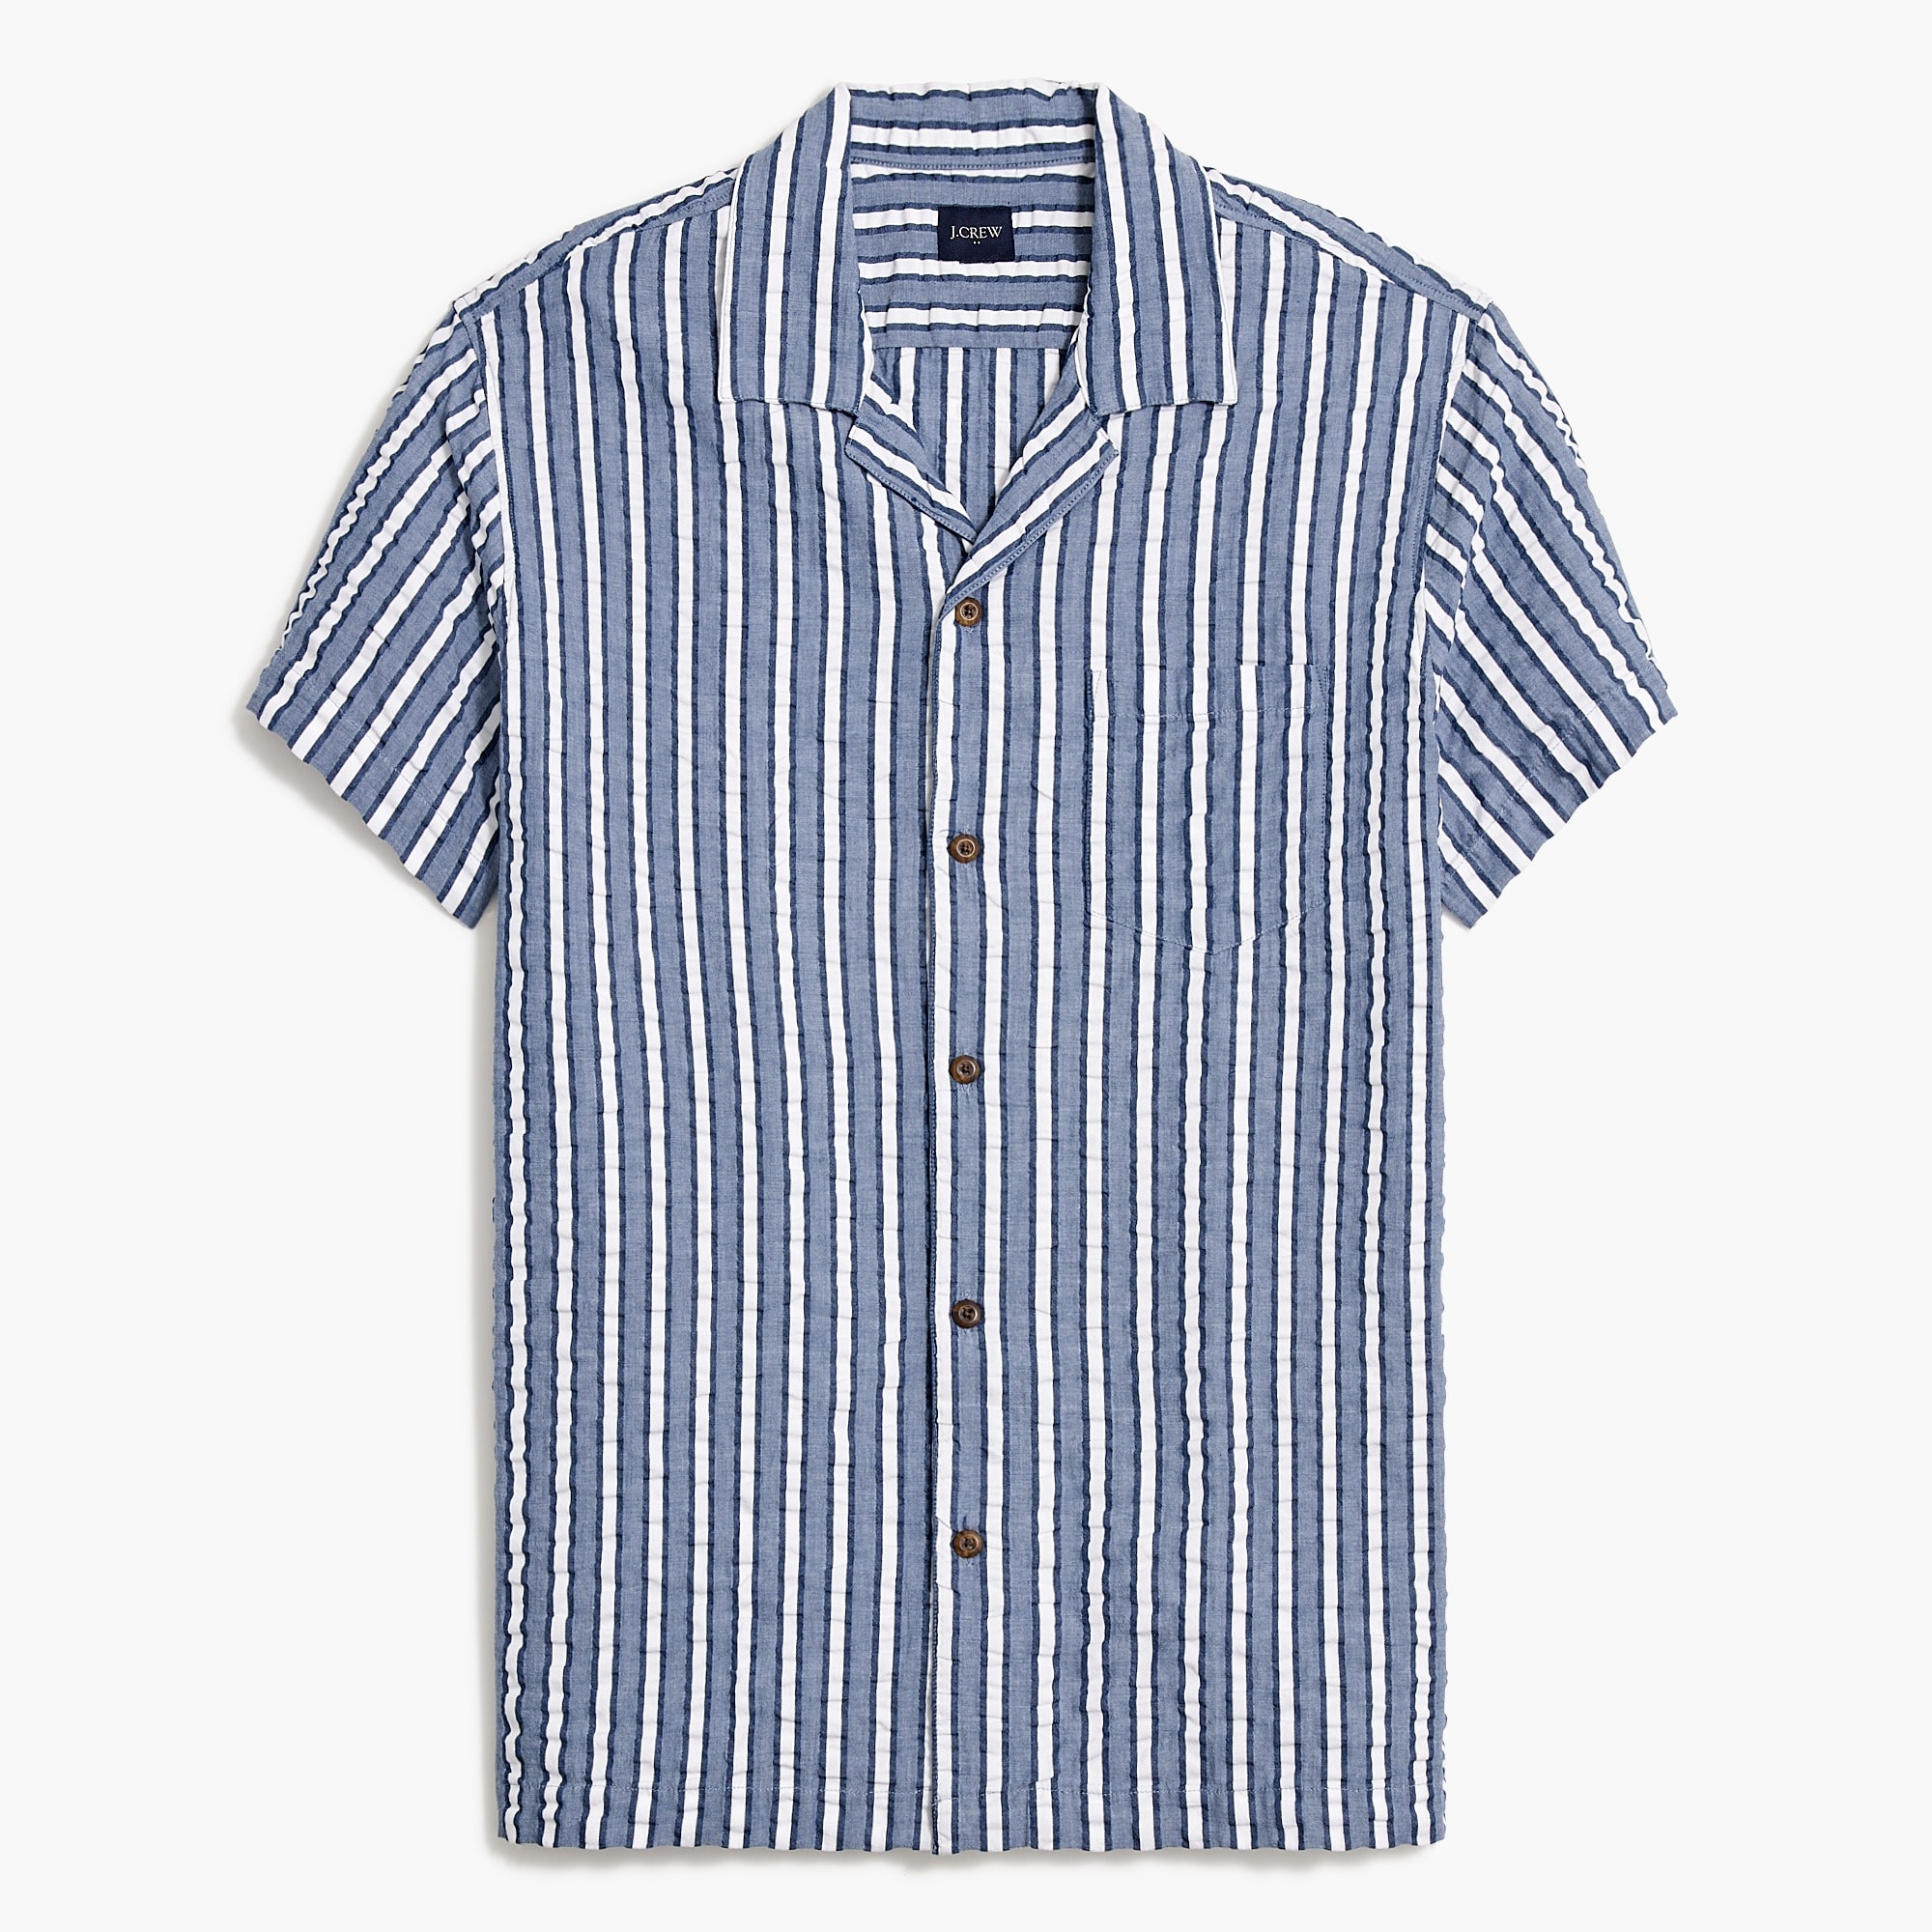  Short-sleeve seersucker striped camp shirt